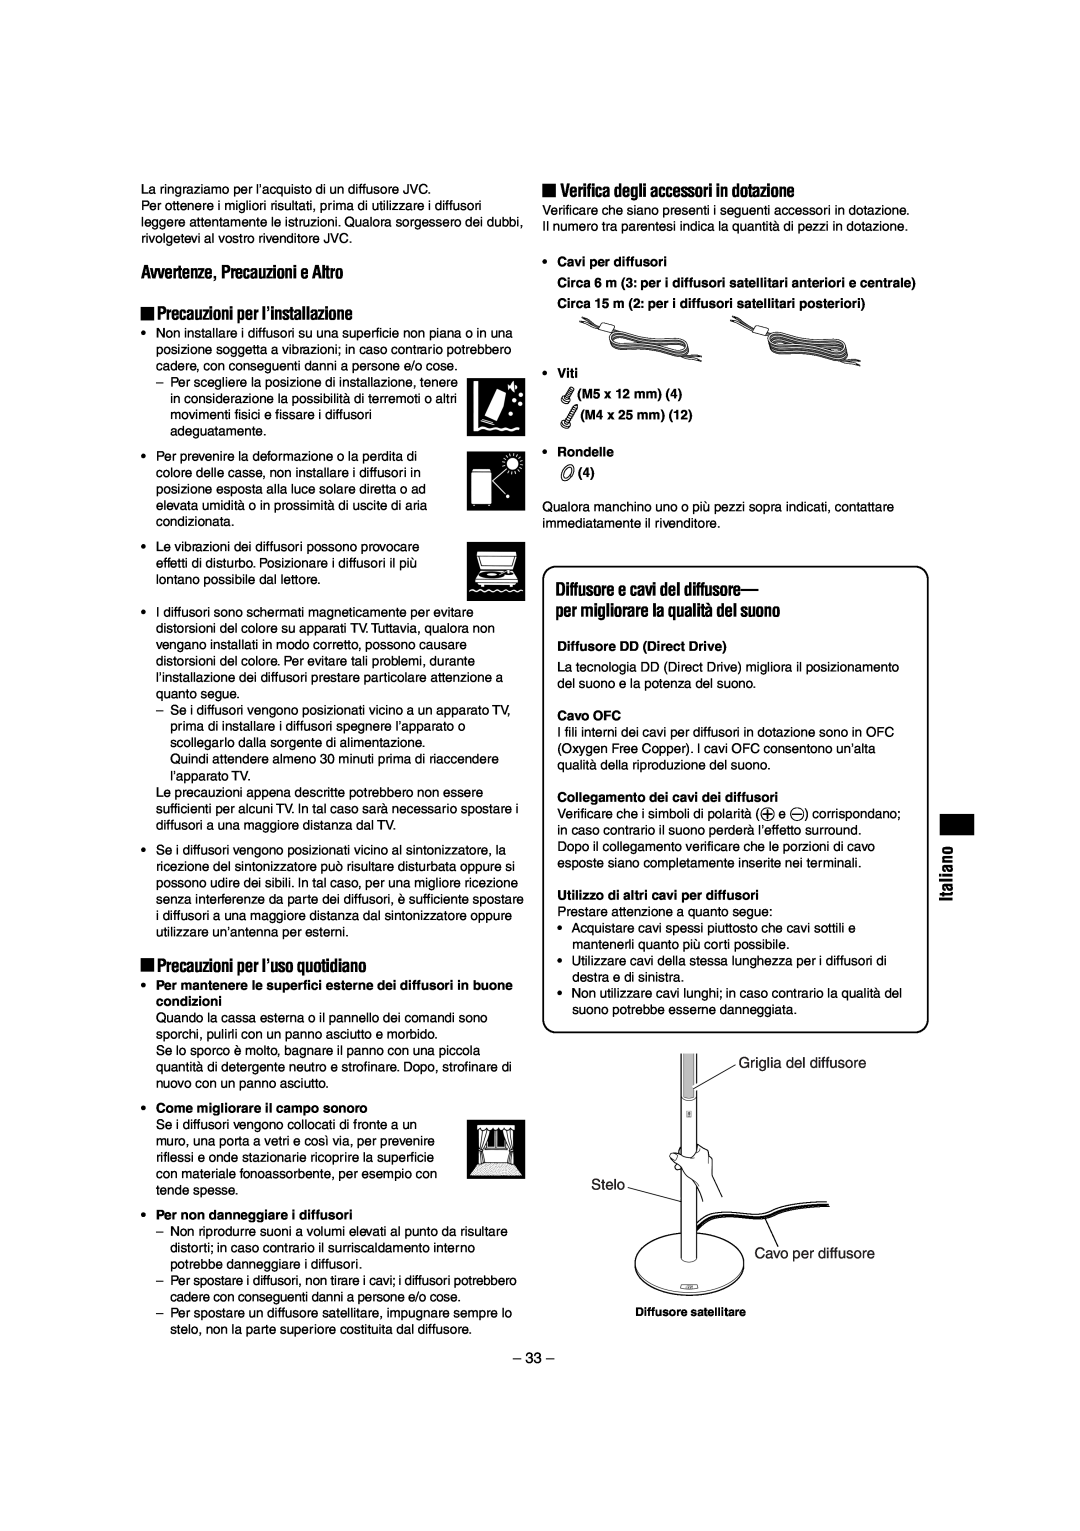 JVC LVT0953-001B manual Avvertenze, Precauzioni e Altro, Precauzioni per l’installazione, Precauzioni per l’uso quotidiano 